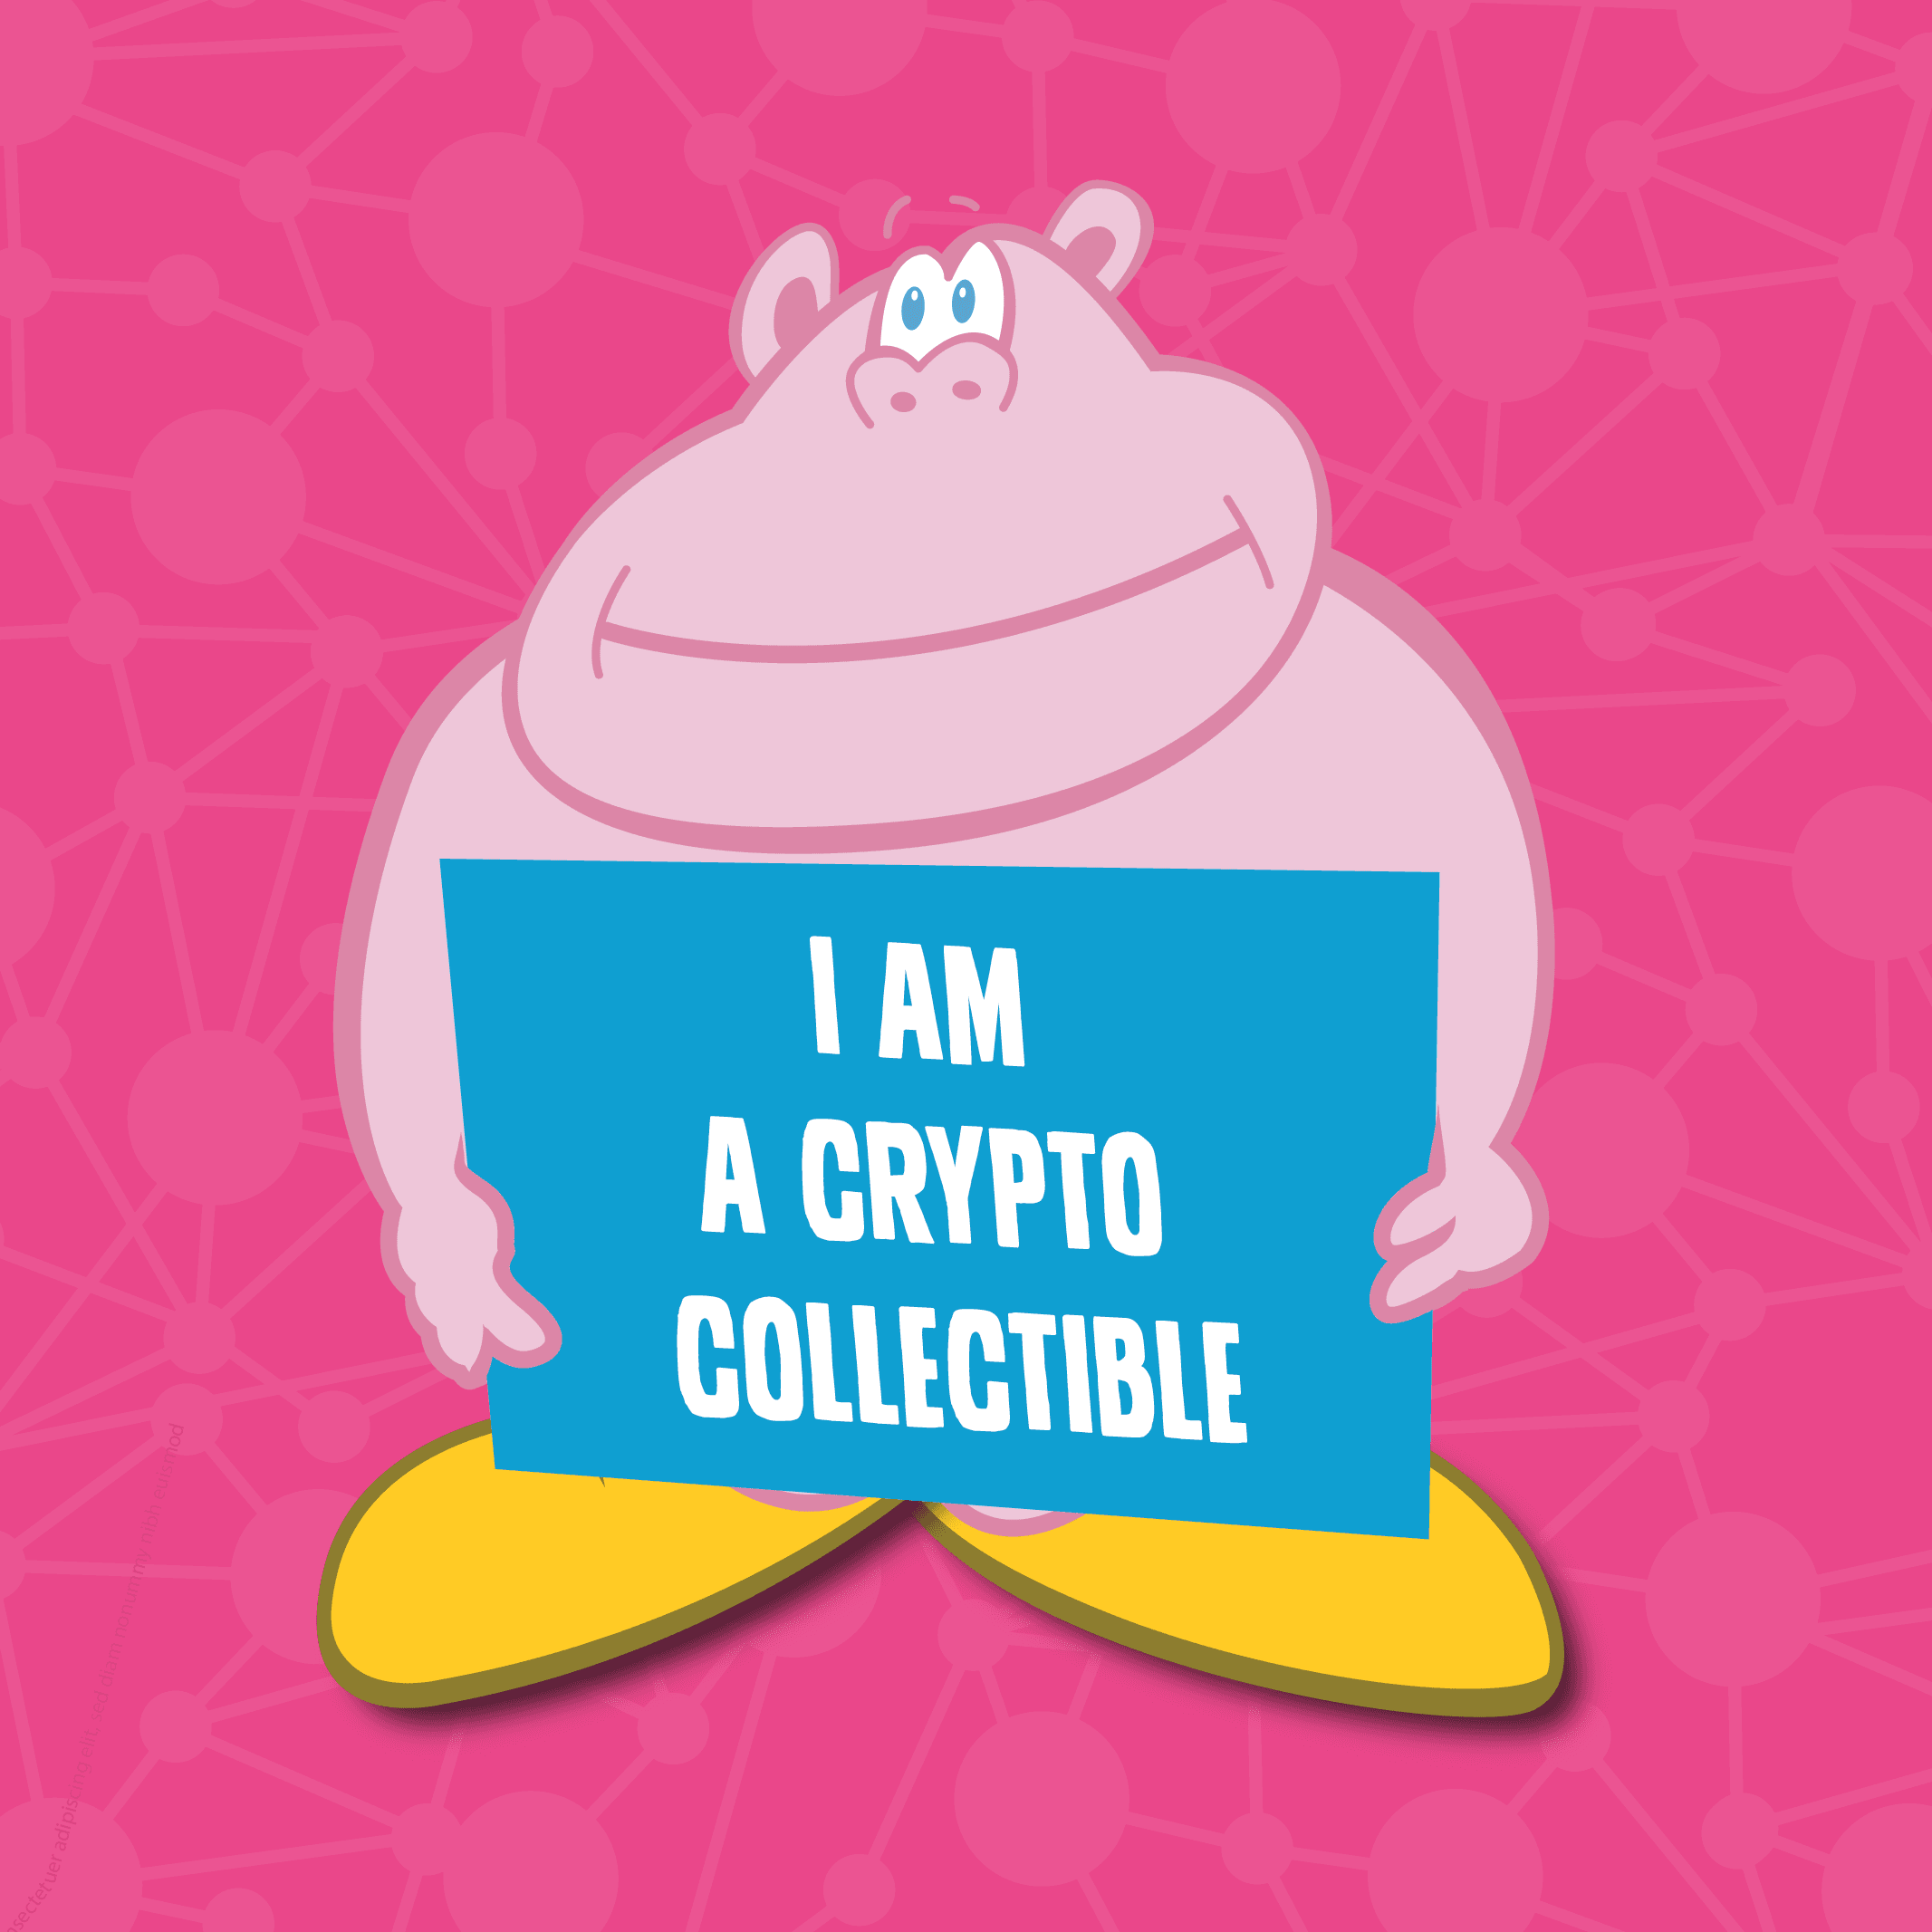 Tooncoin - I am a crypto collectible